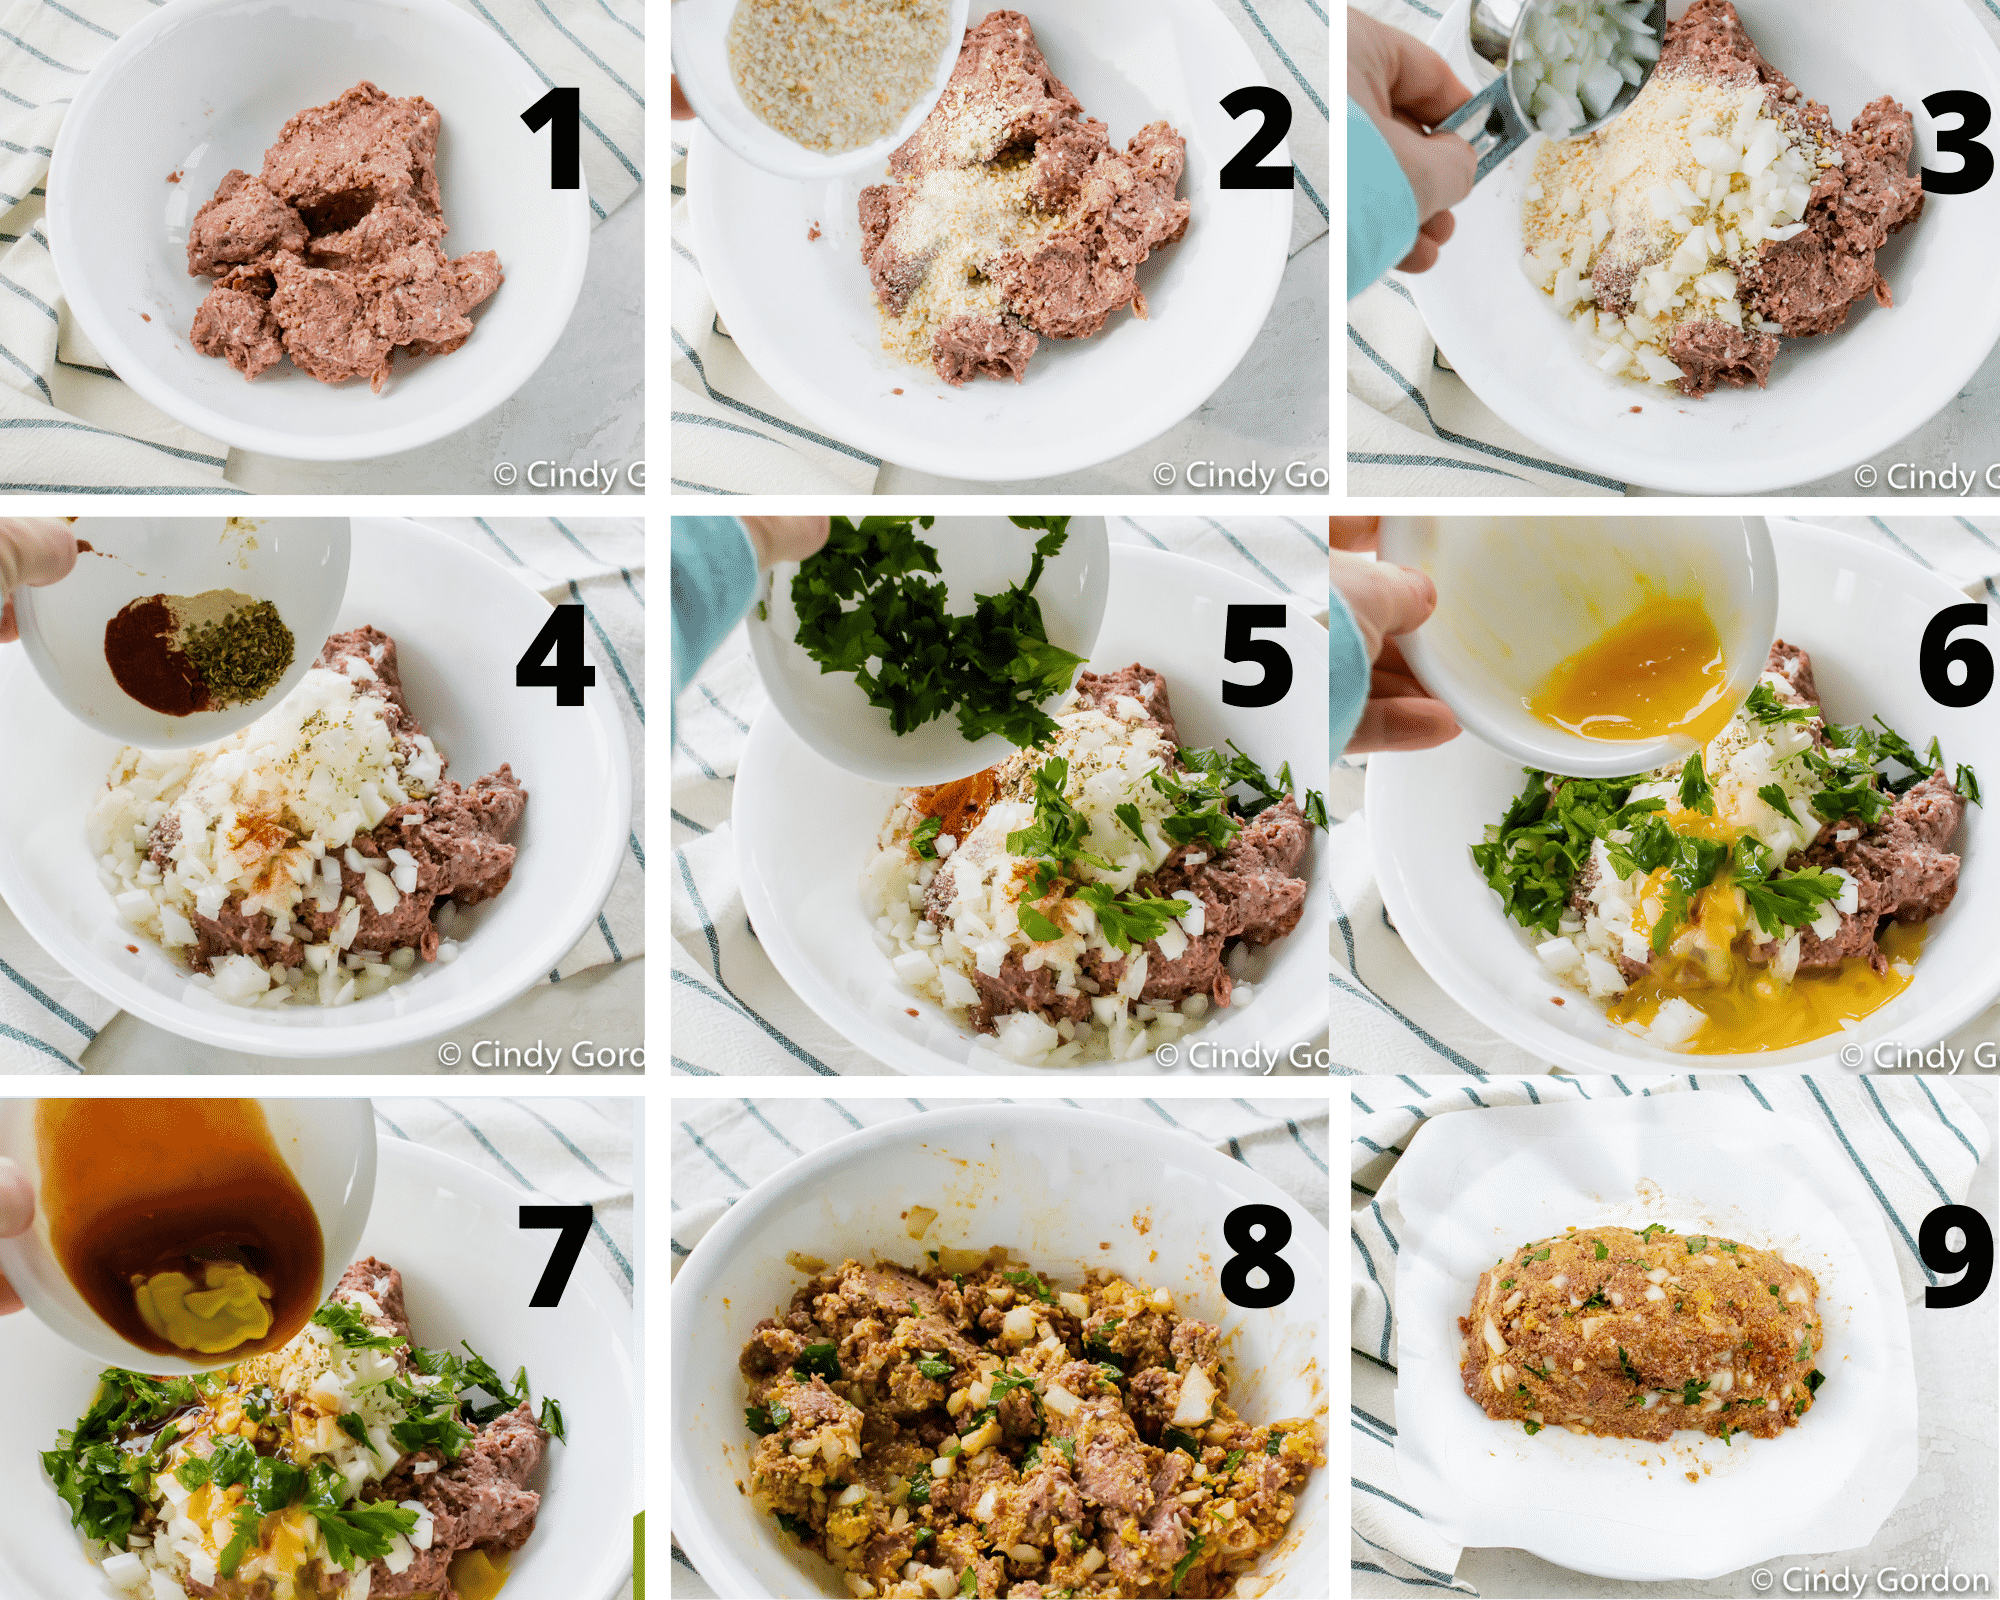 9 steps of mixing ingredients to make vegetarian meatloaf